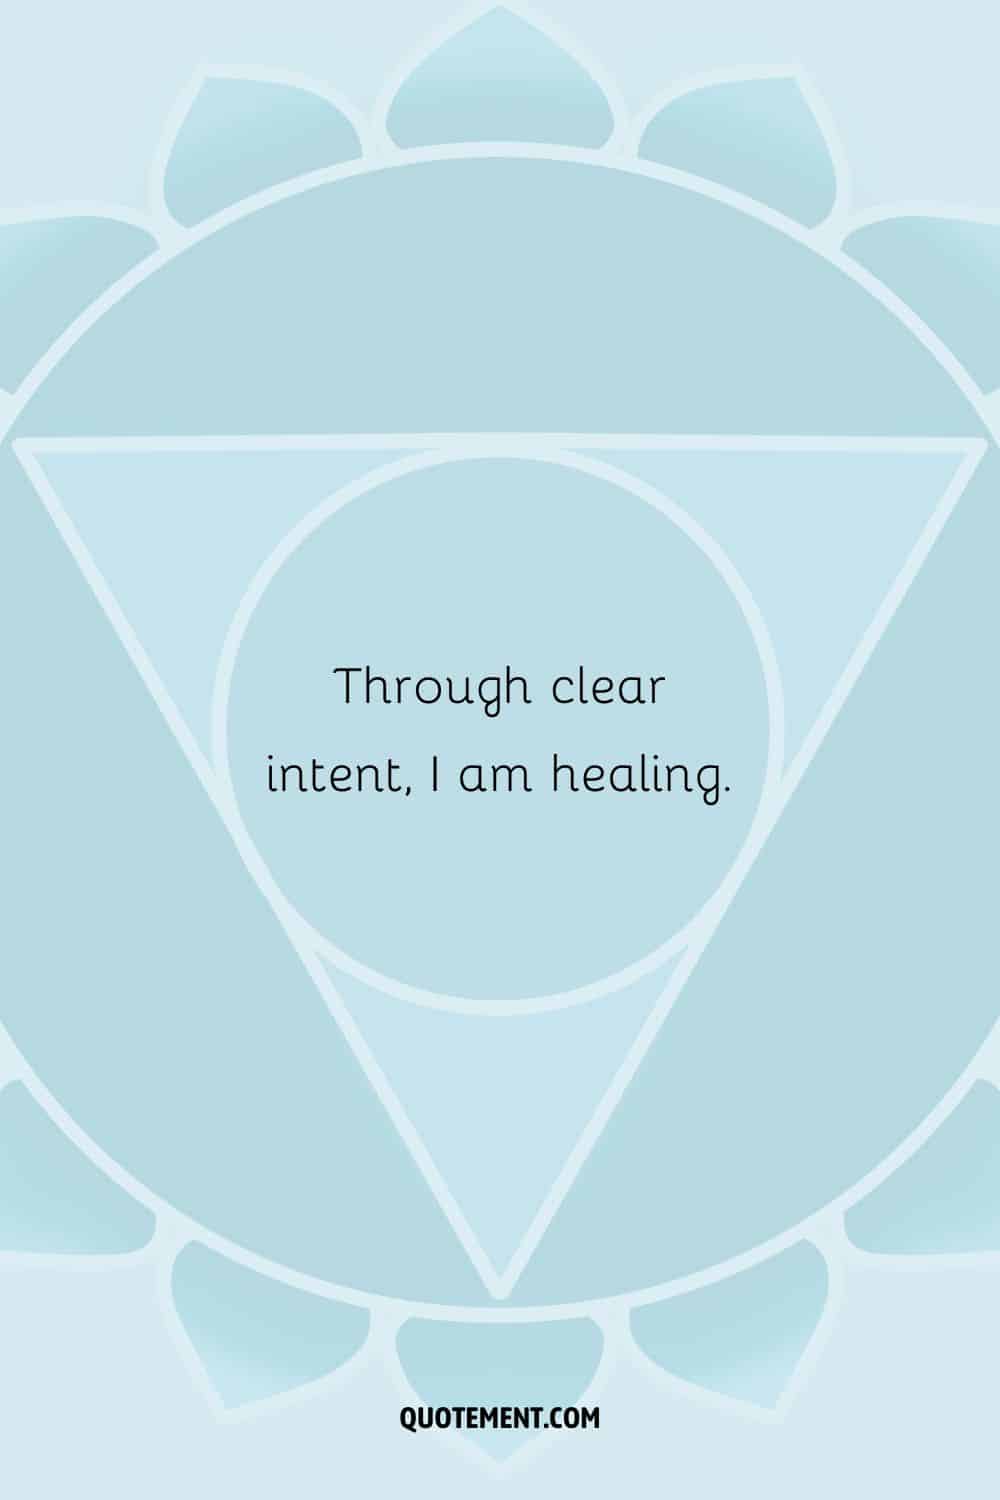 “Through clear intent, I am healing.”